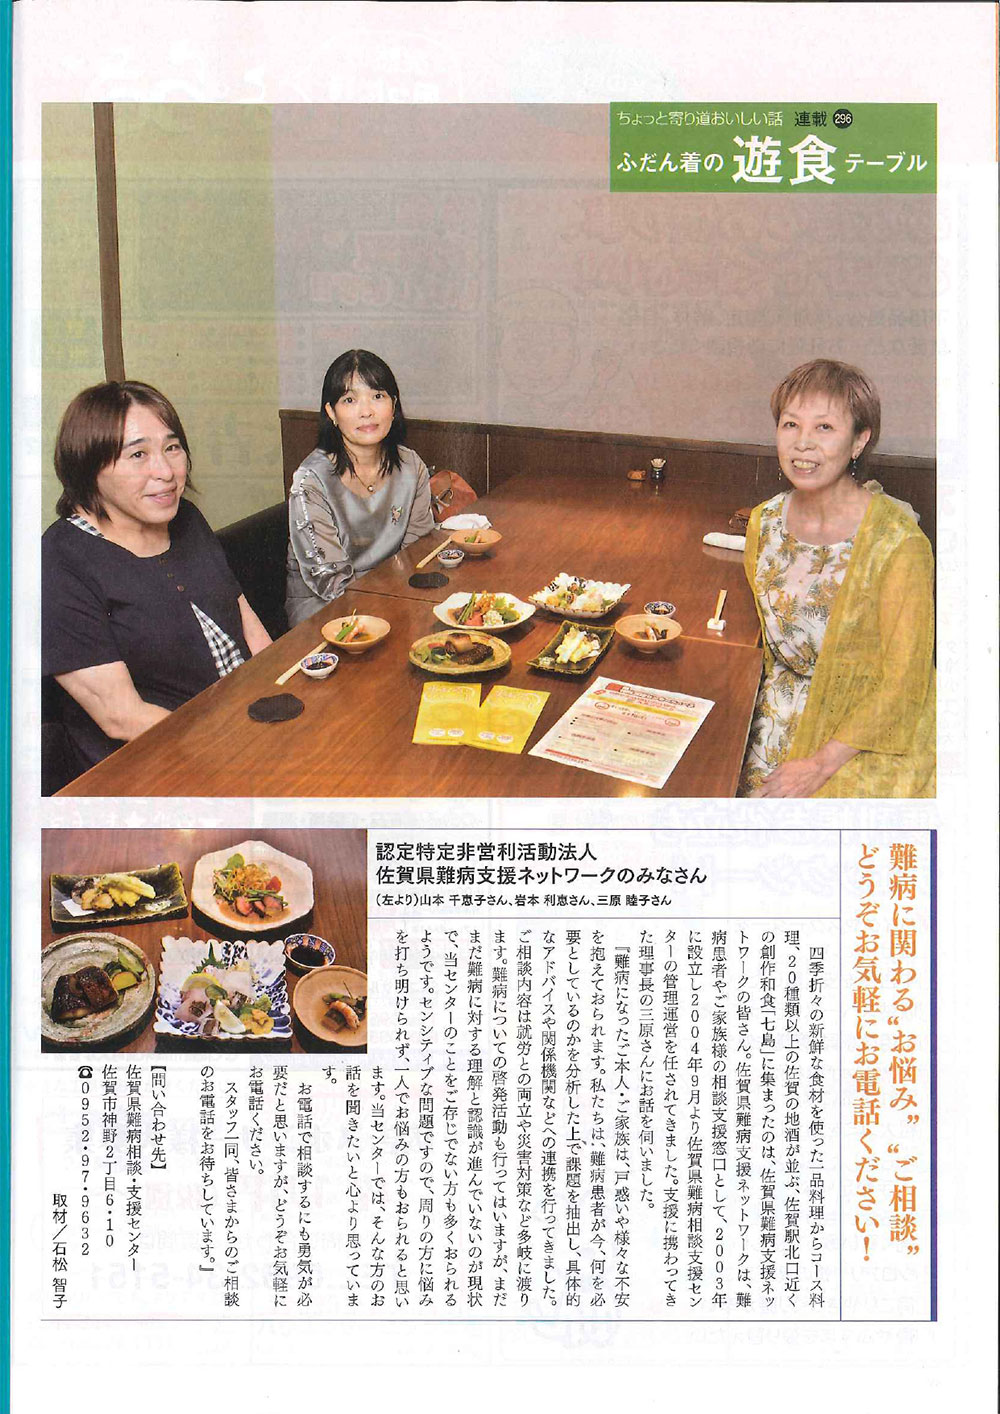 8月号の「月刊ぷらざ佐賀のふだん着の遊食テーブル」に掲載されました。